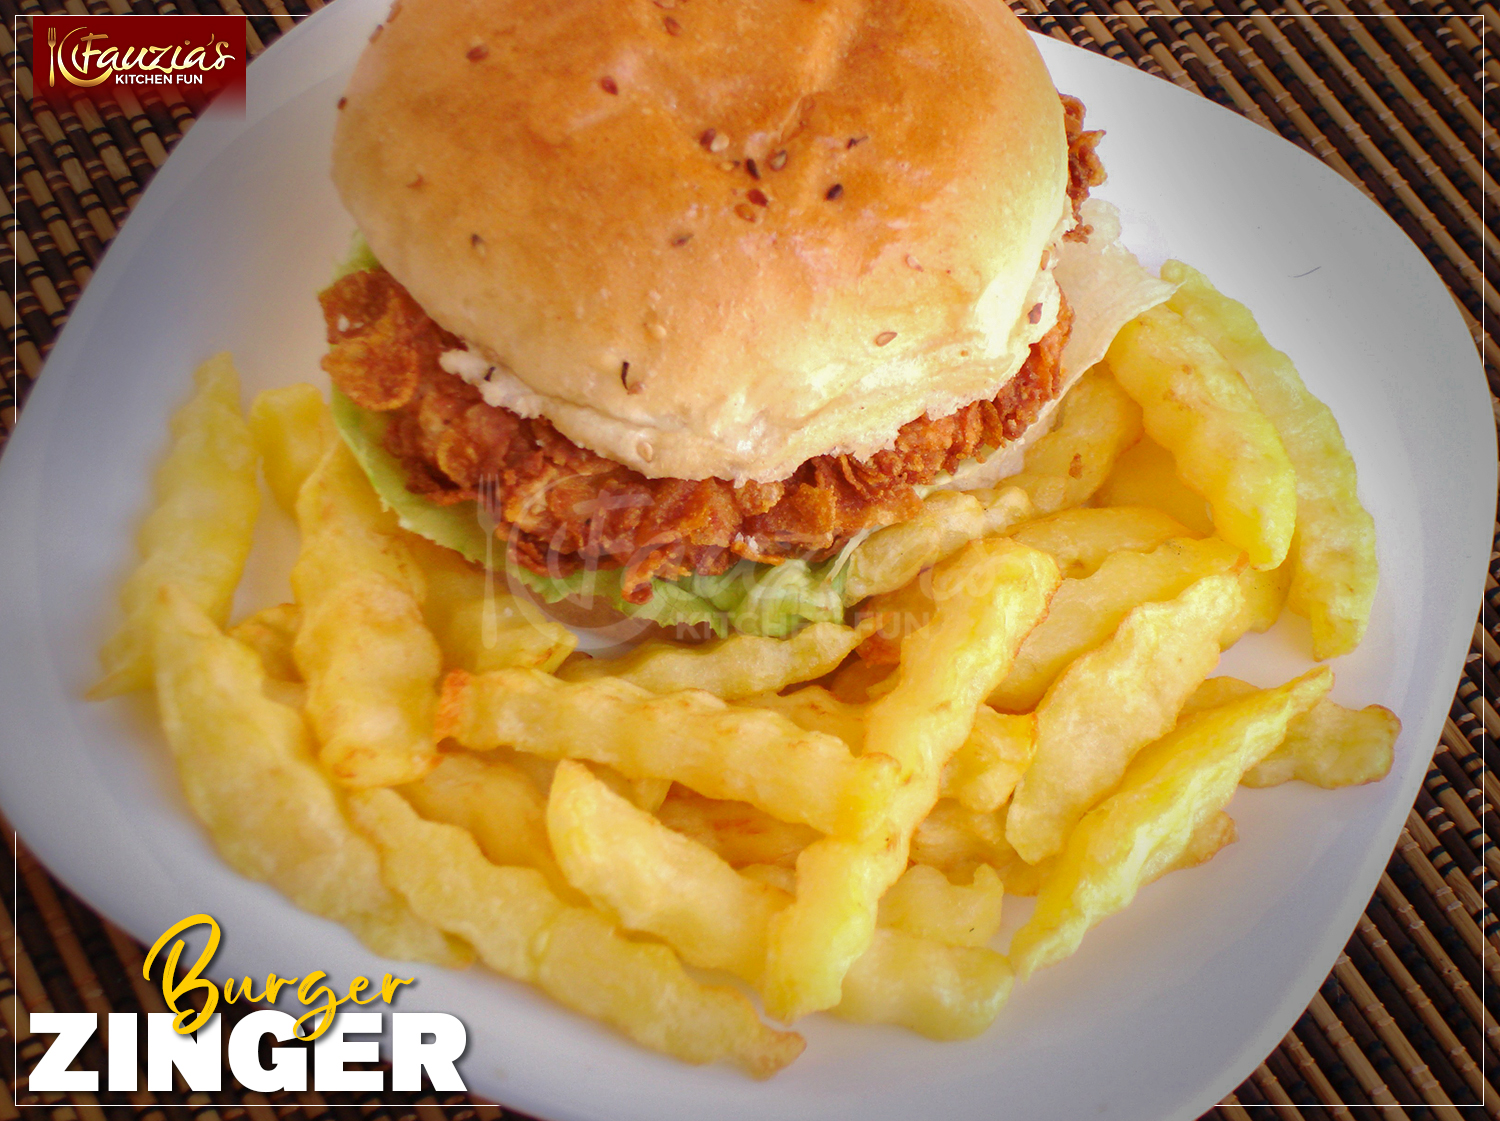 Zinger Burger - Fauzia's Kitchen Fun